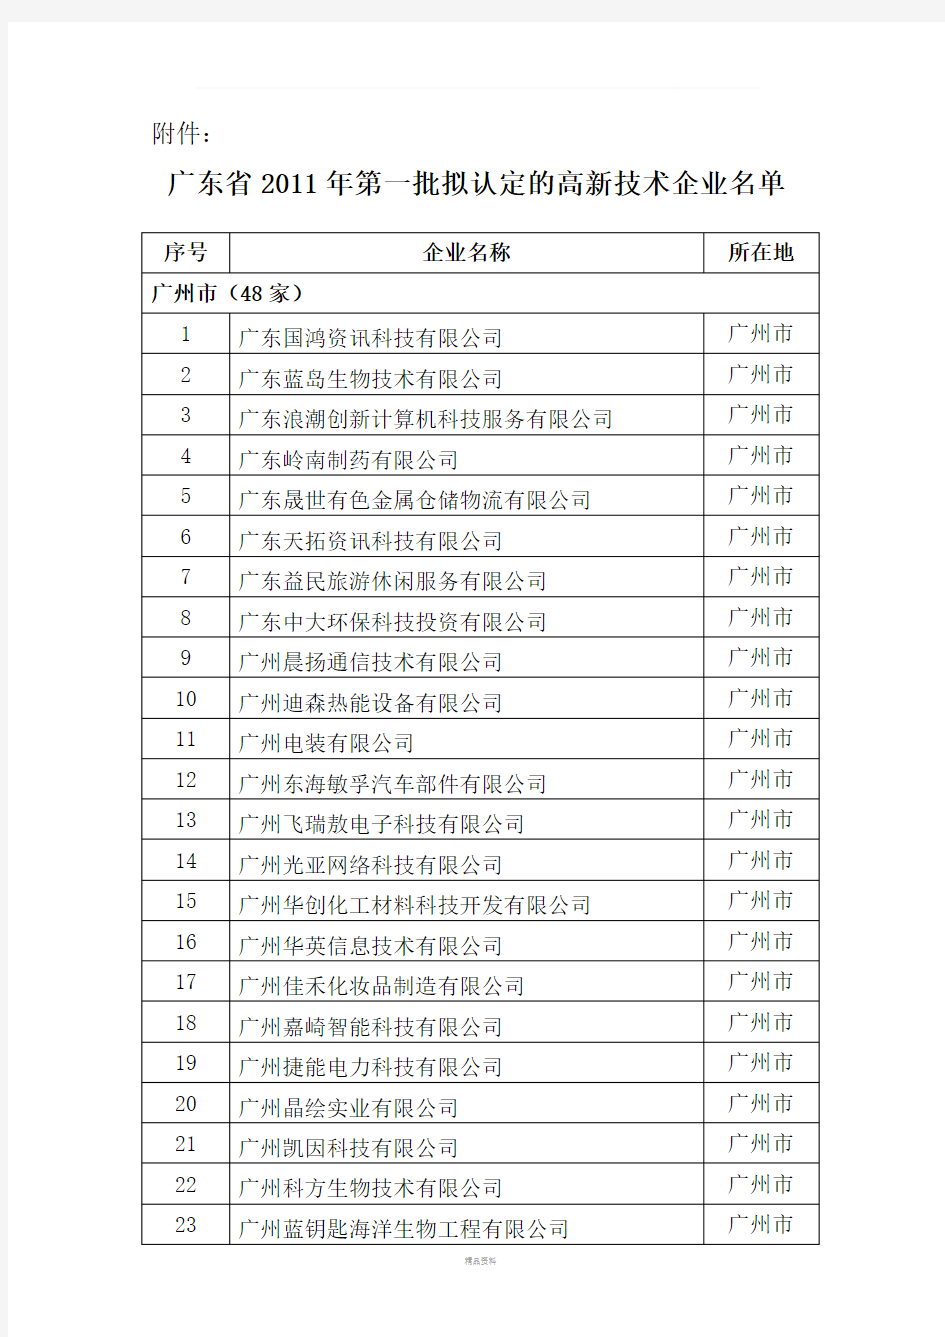 广东省2011年第一批拟认定的高新技术企业名单